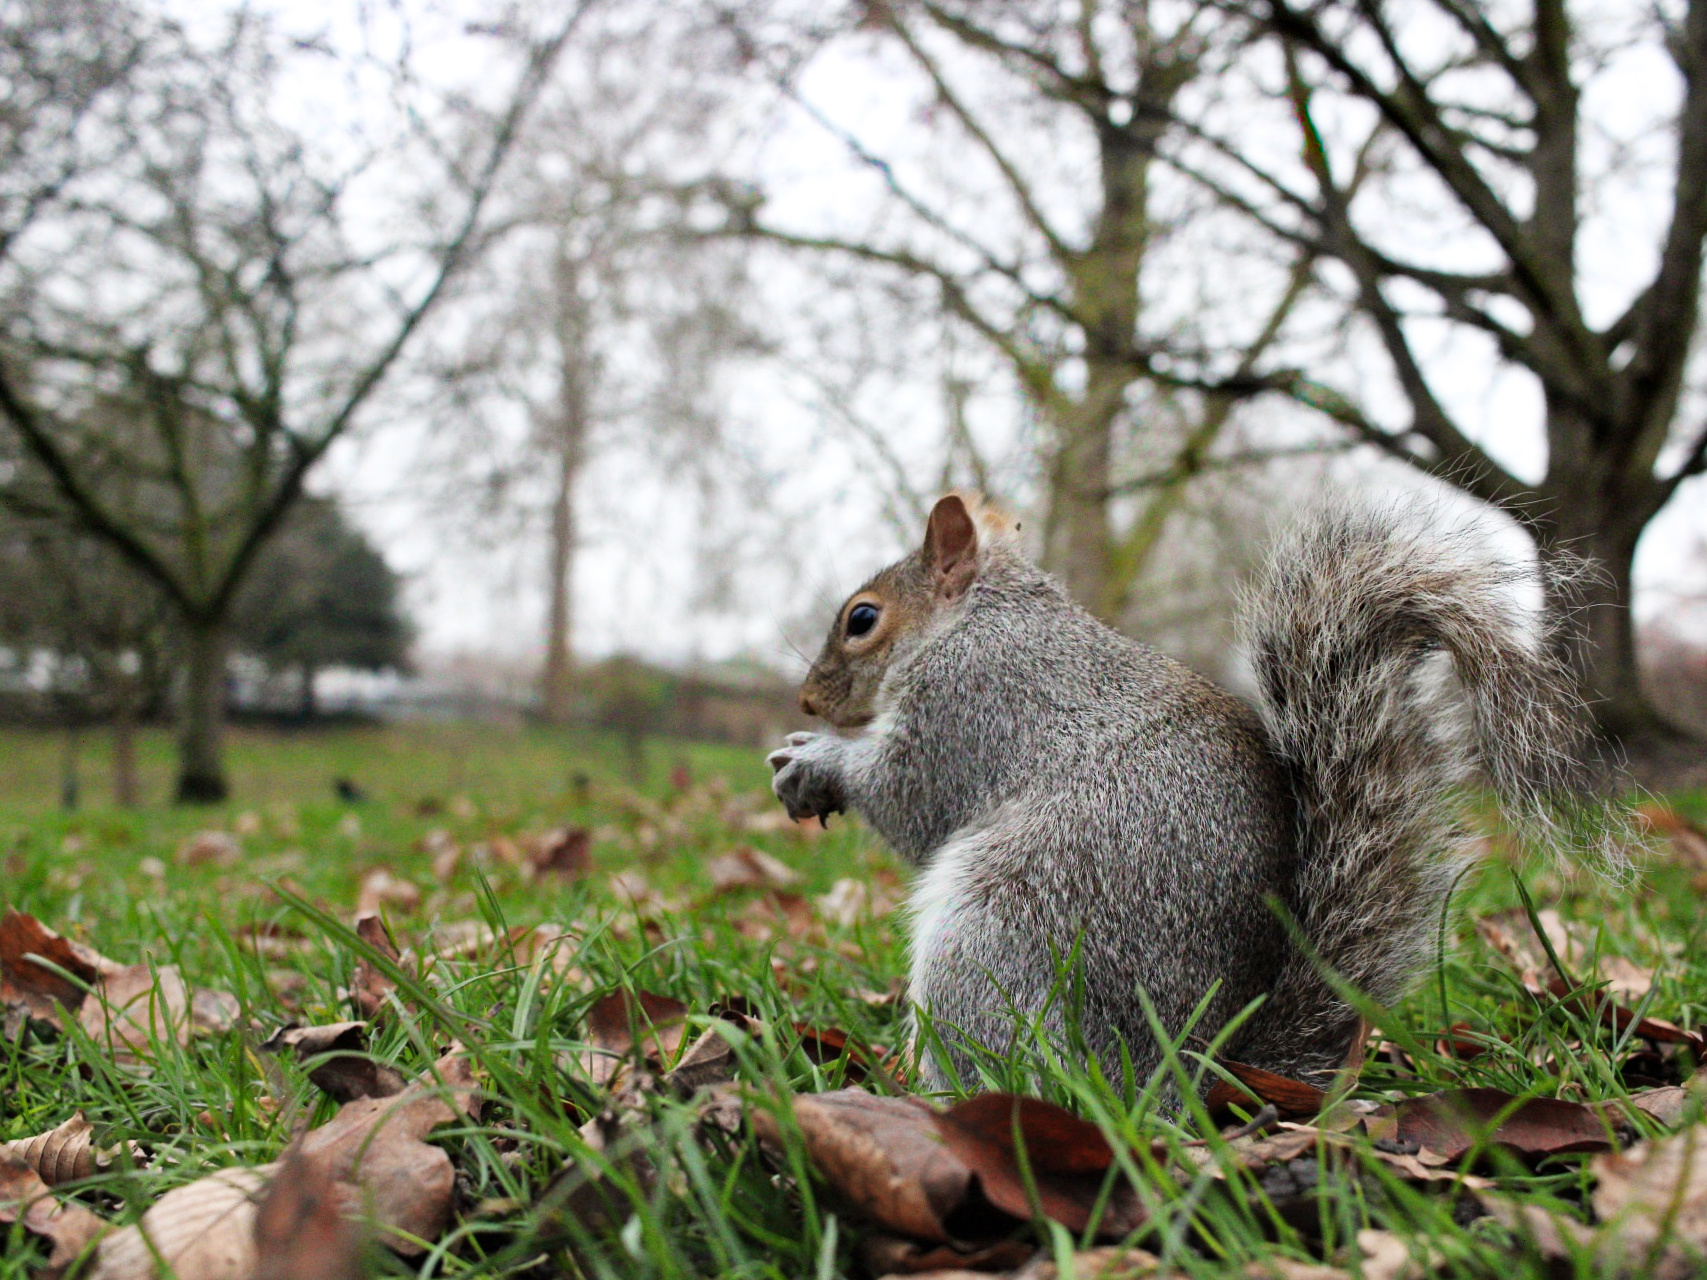 Hyde Park squirrel...